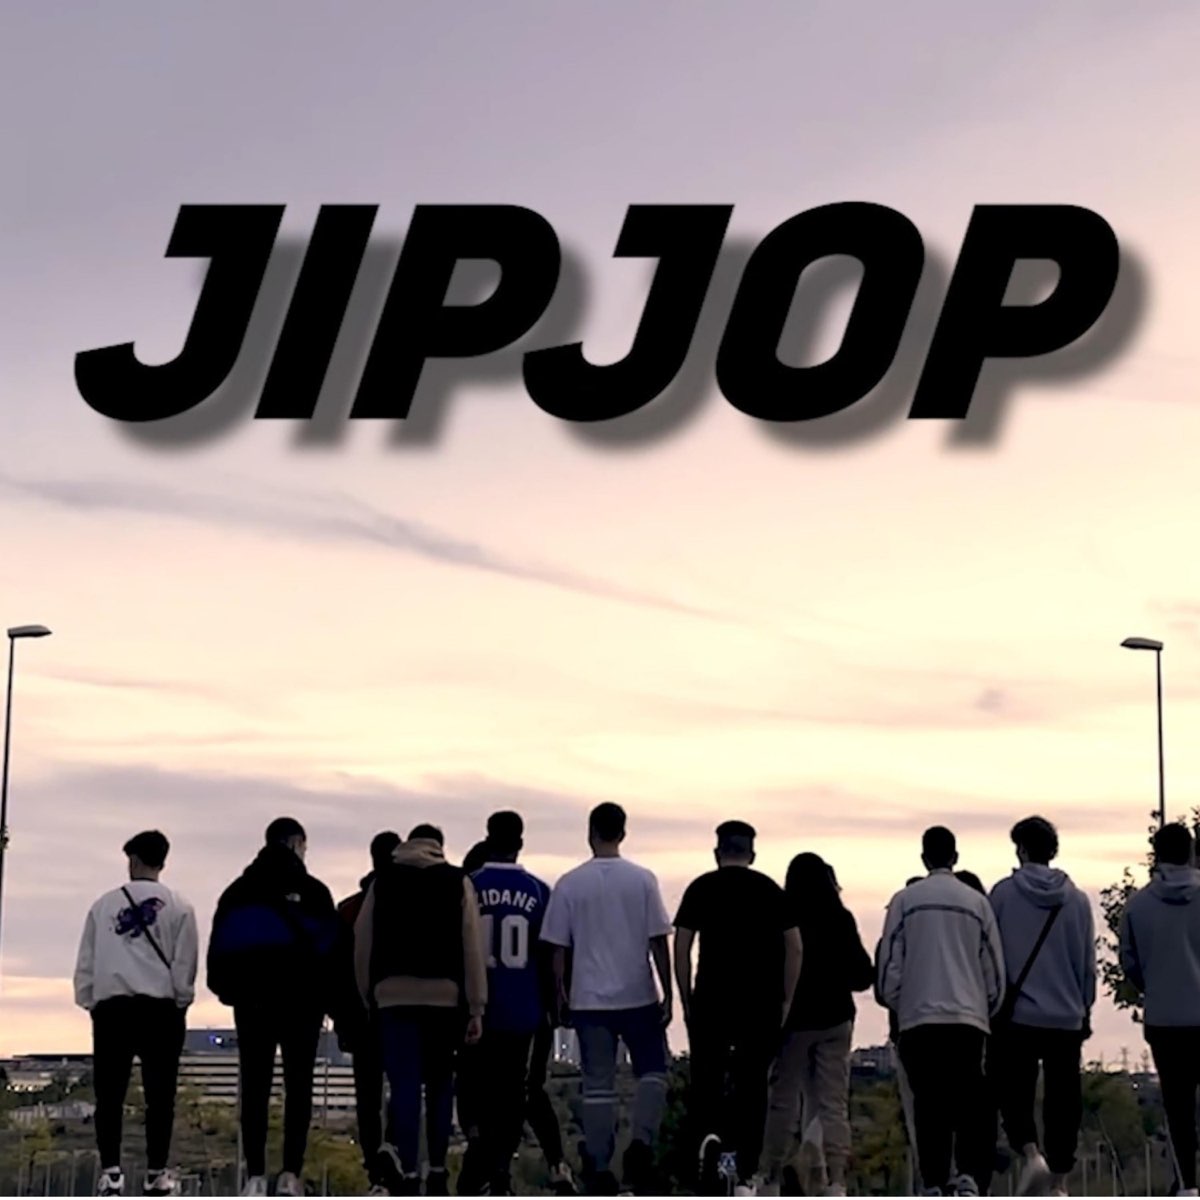 Jipjop - Single by Zete on Apple Music